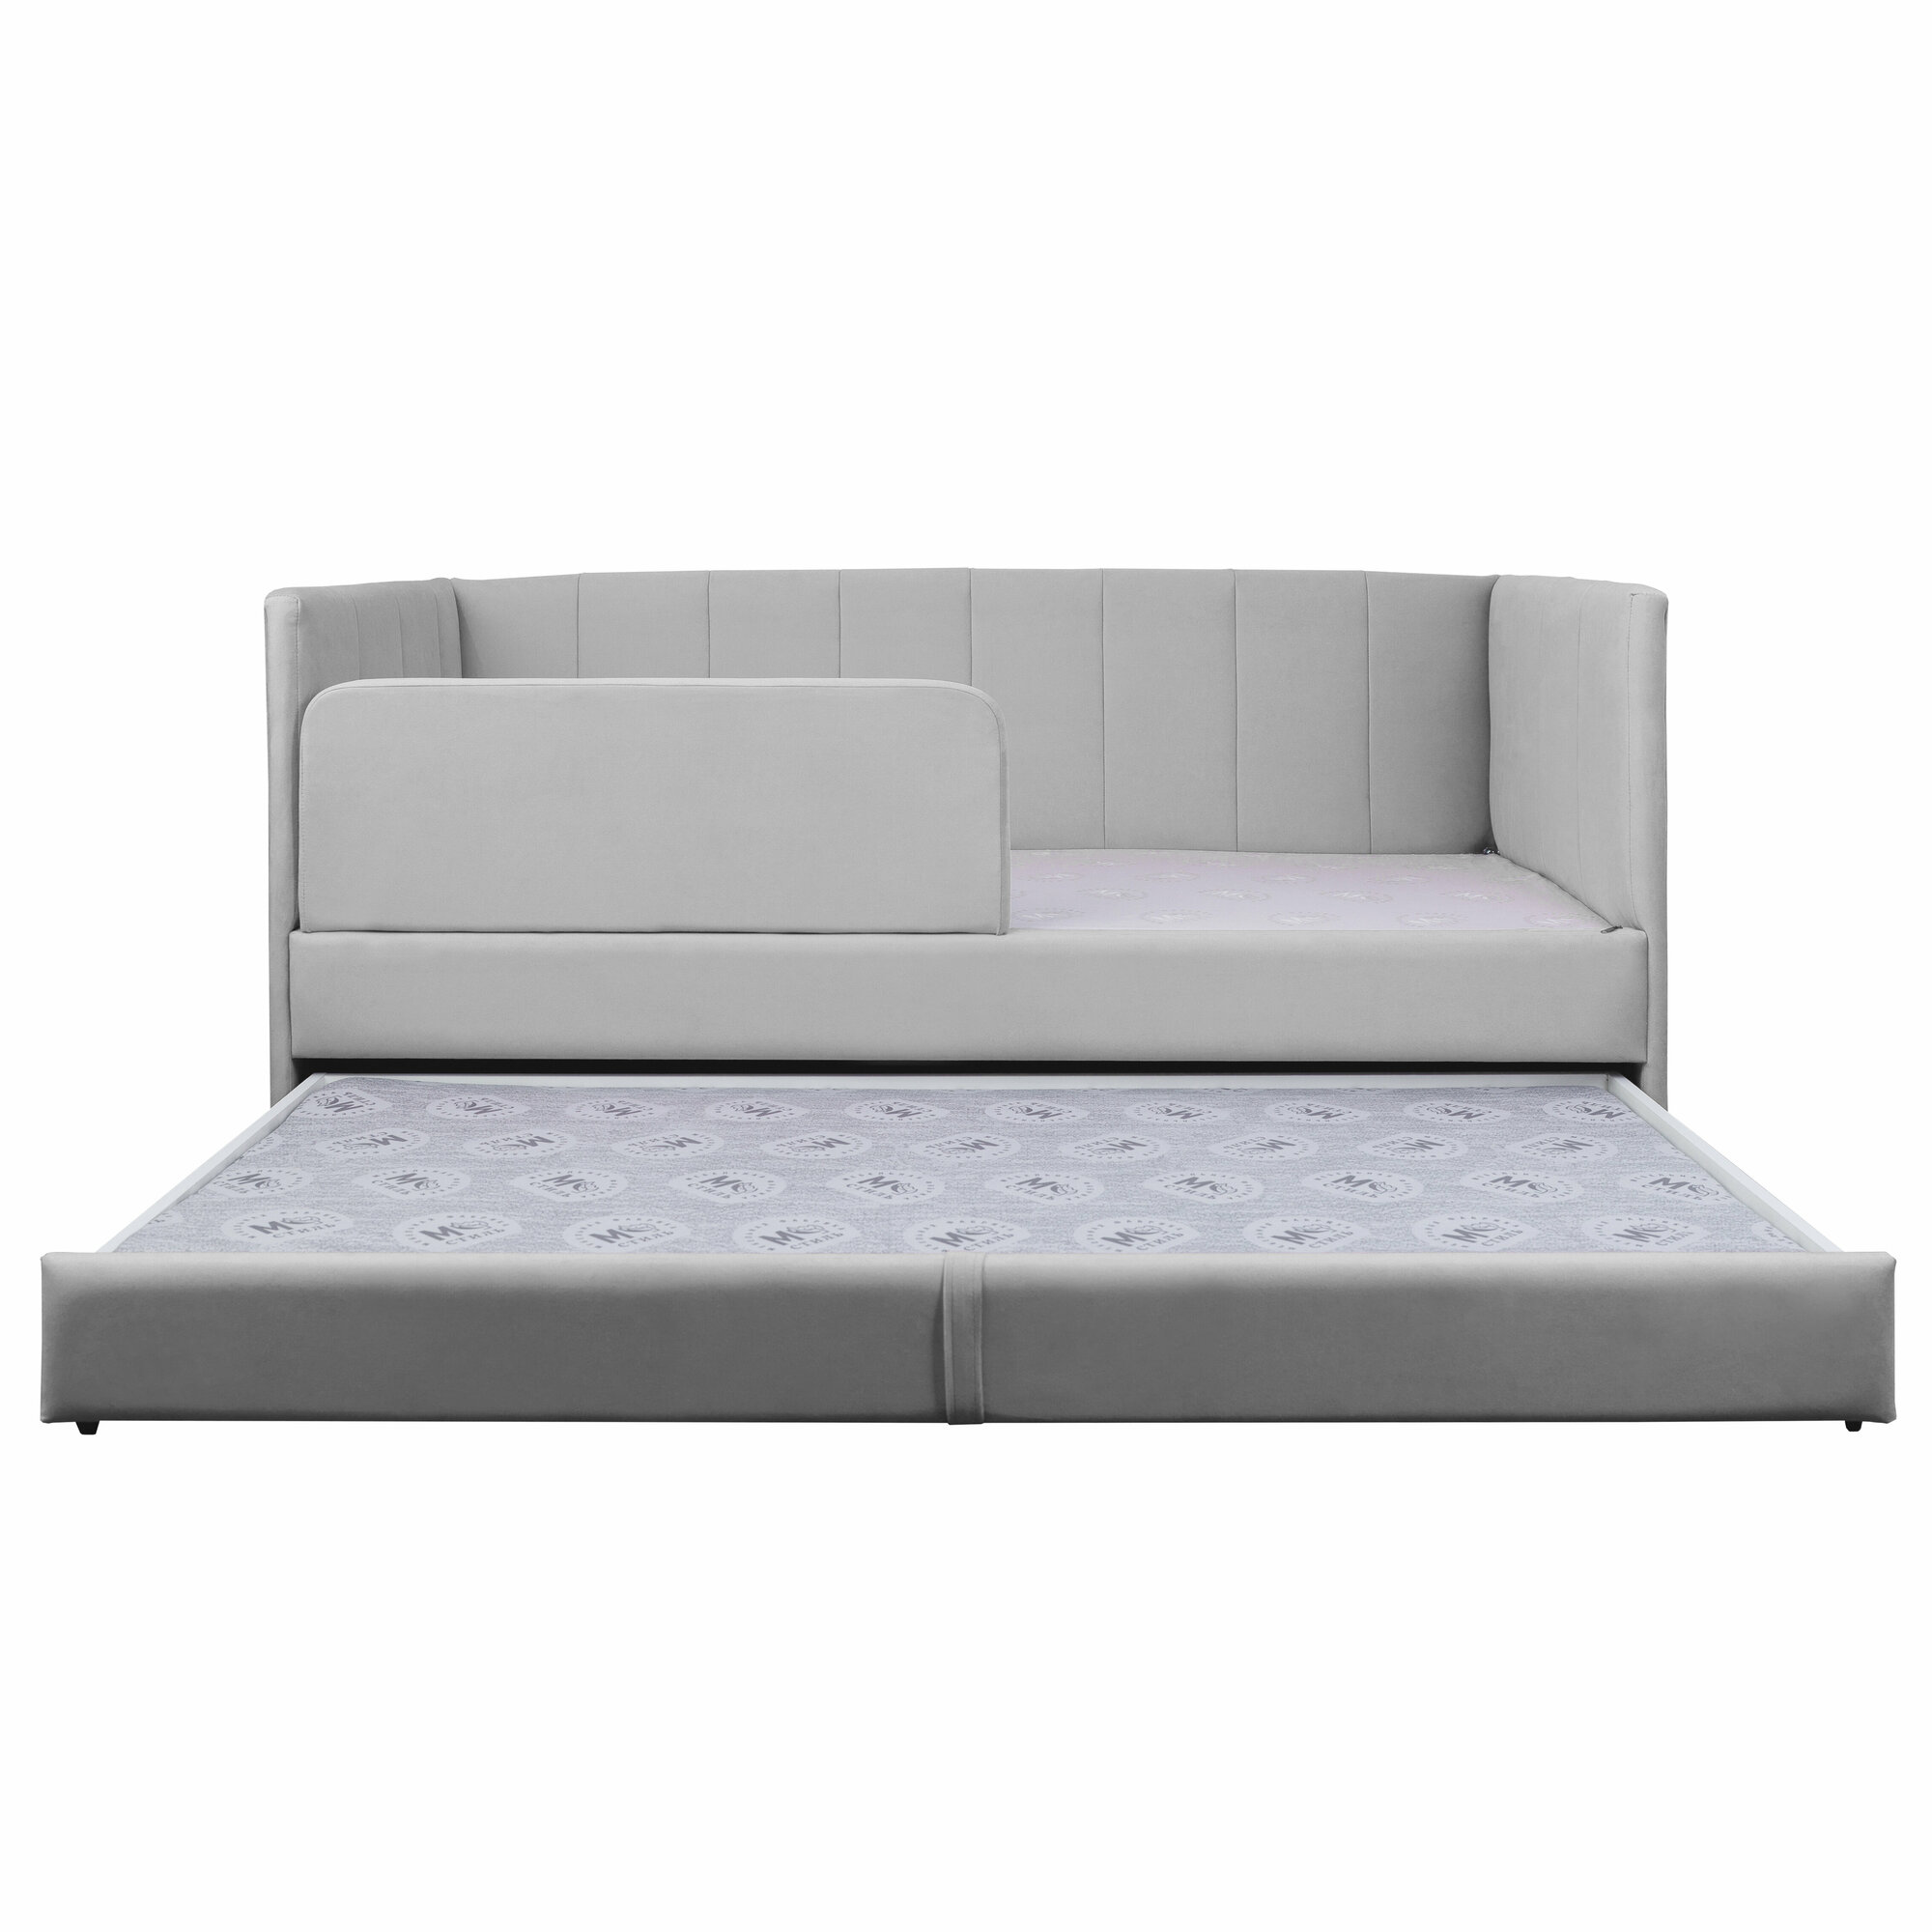 Кровать-диван Хагги 180*90 серая с защитным бортиком, ящиком для хранения